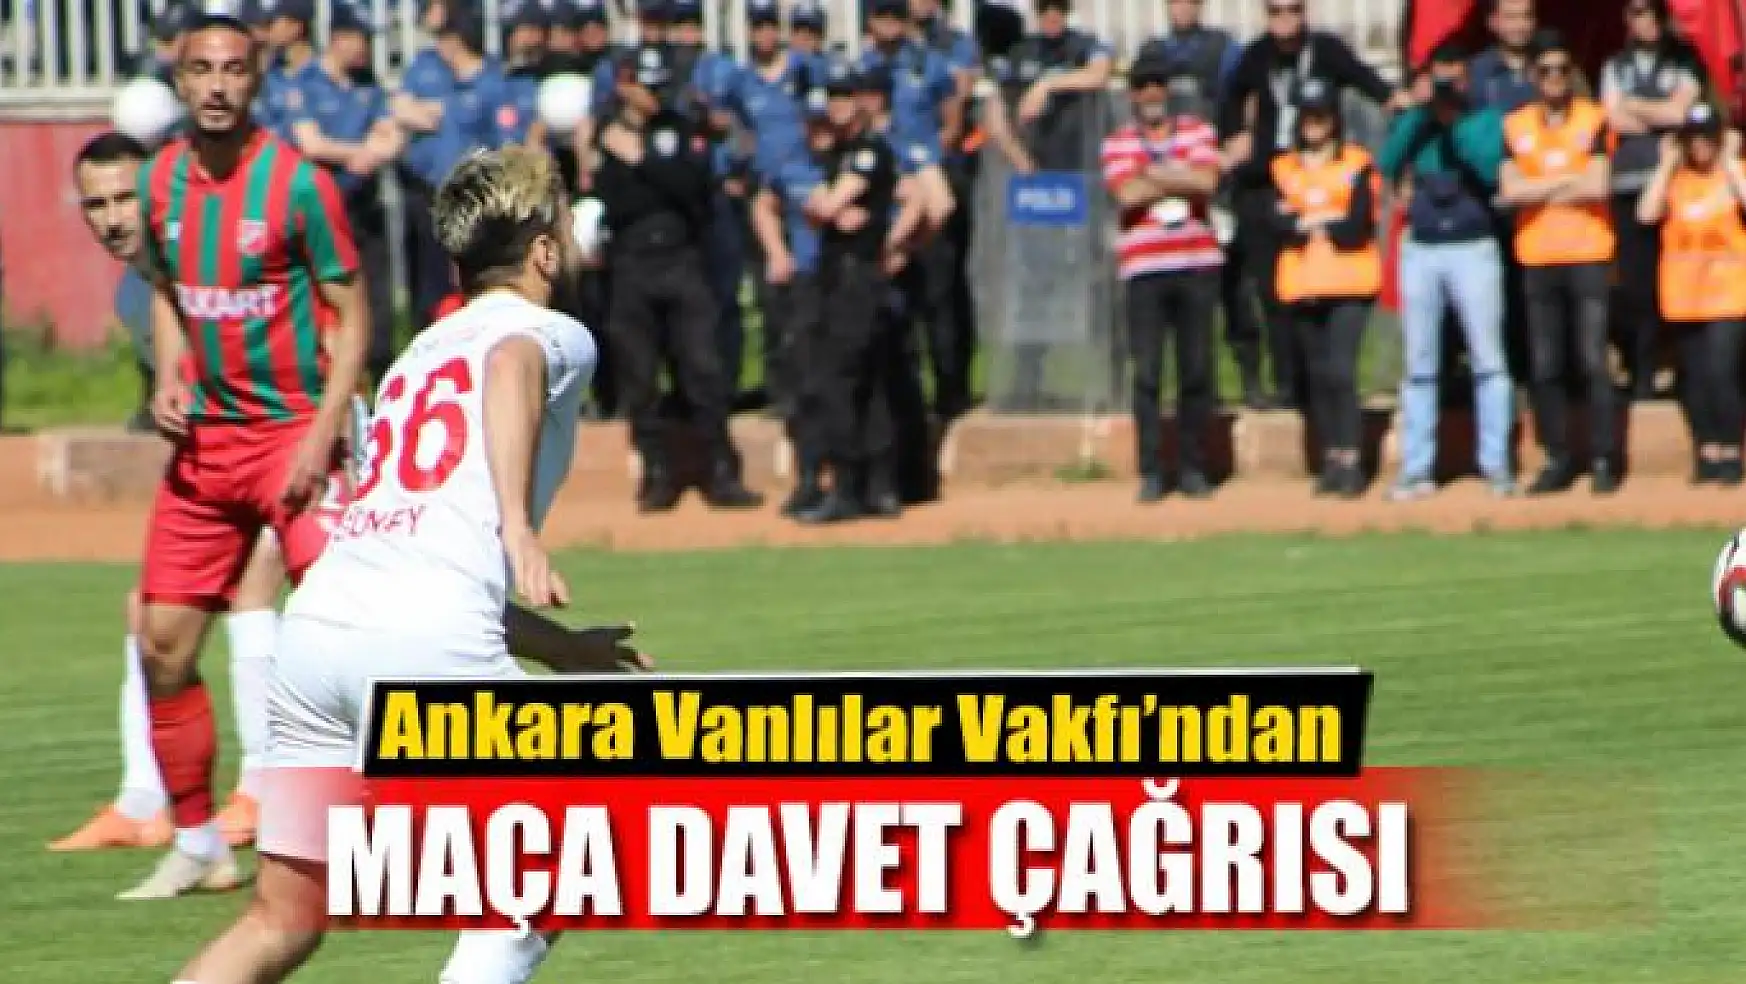 Ankara Vanlılar Vakfı'ndan maça davet çağrısı